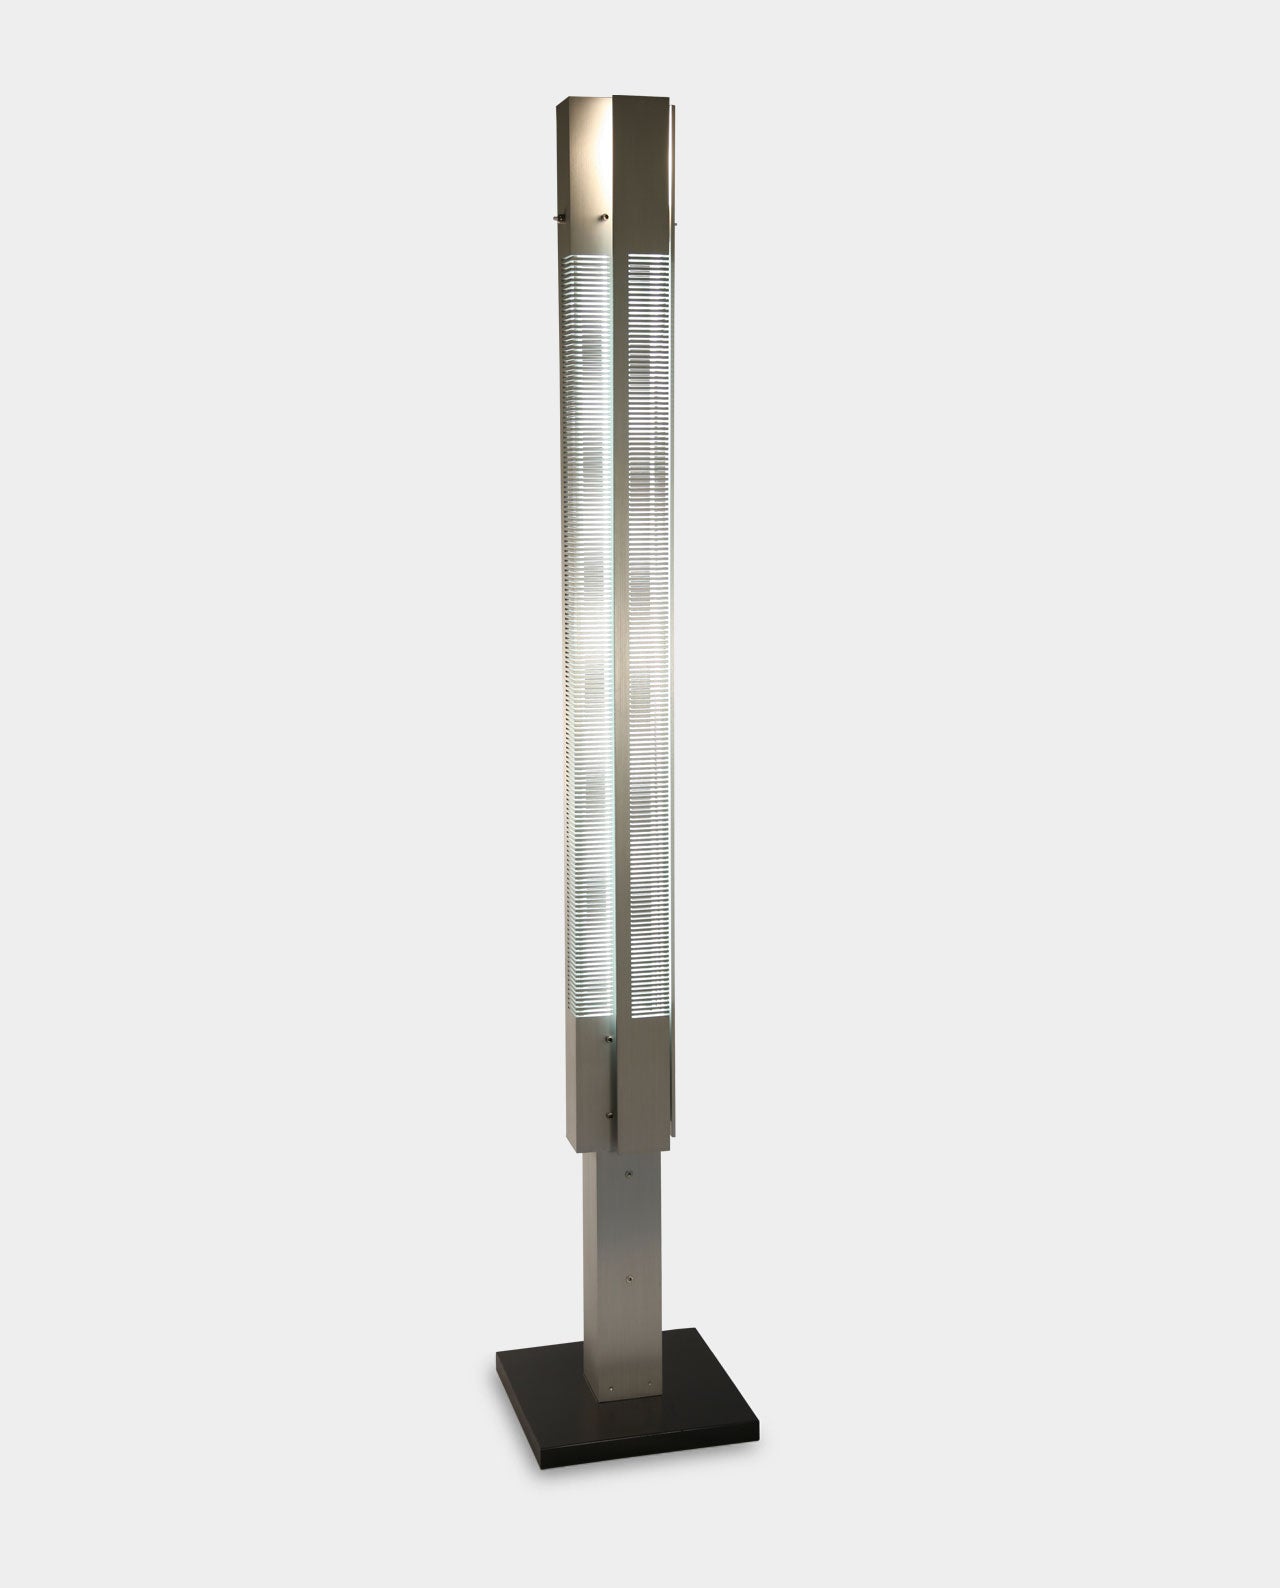 Floor lamp "Big Signal" - The Design Part